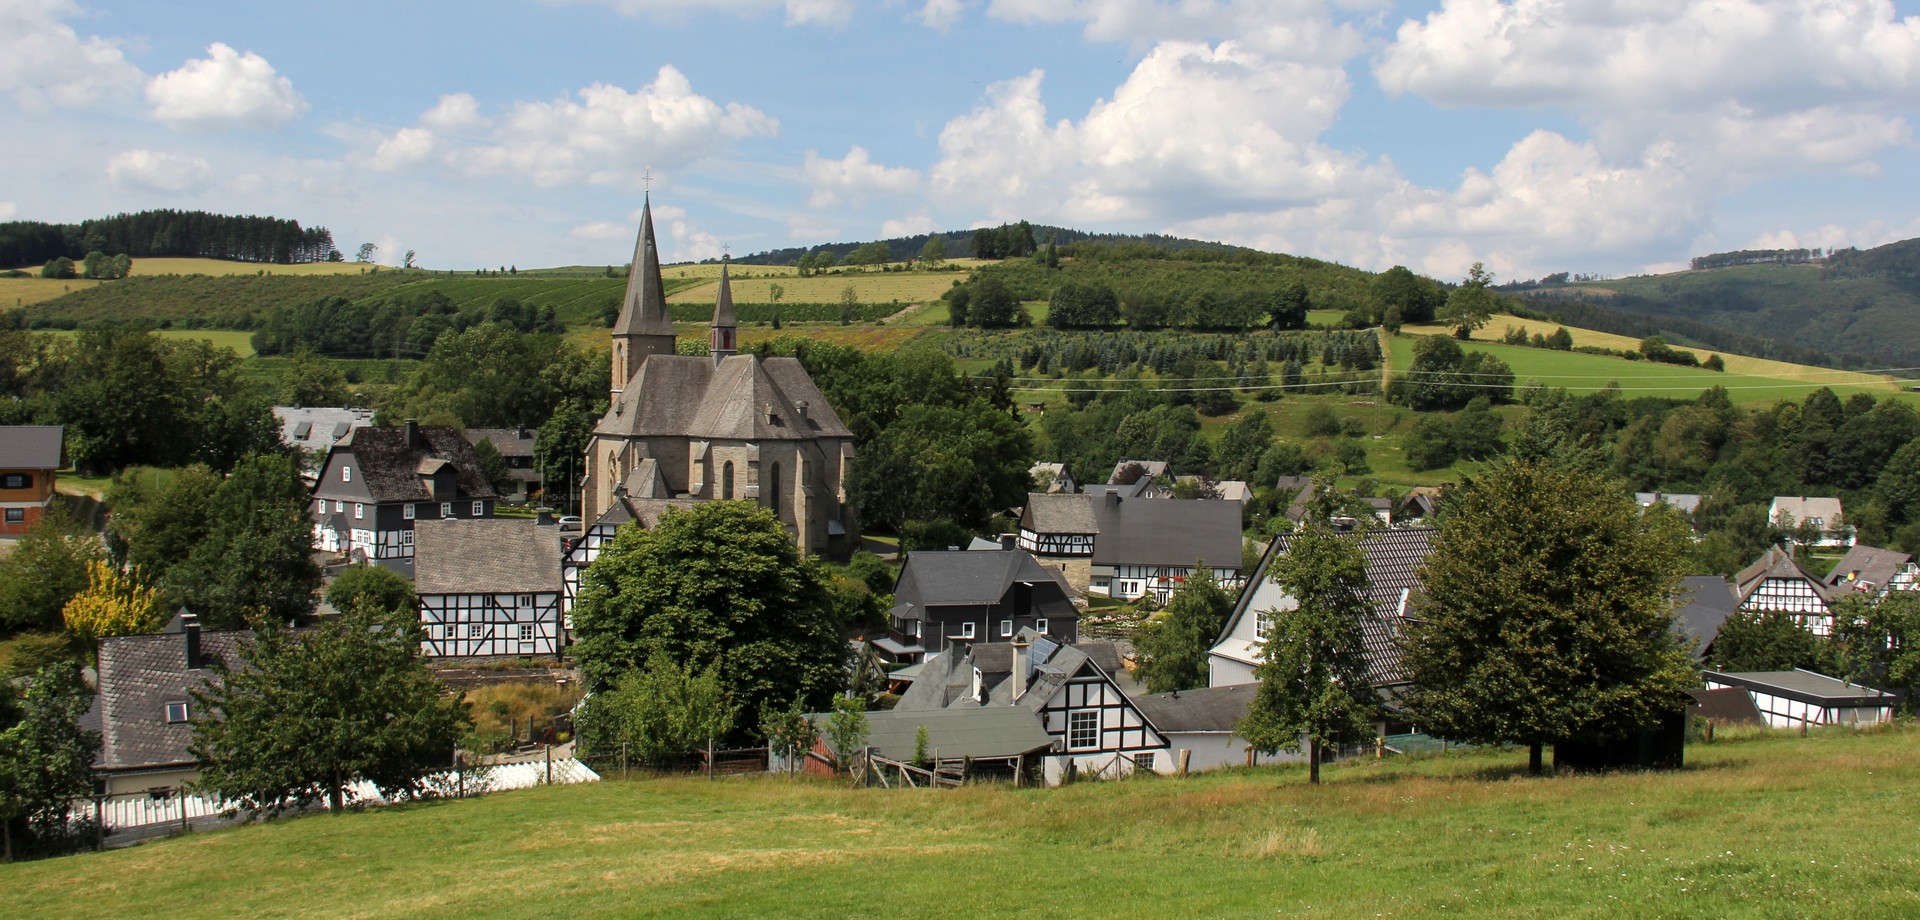 Dorf mit Kirche und Fachwerkgebäuden in einer hügeligen Landschaft